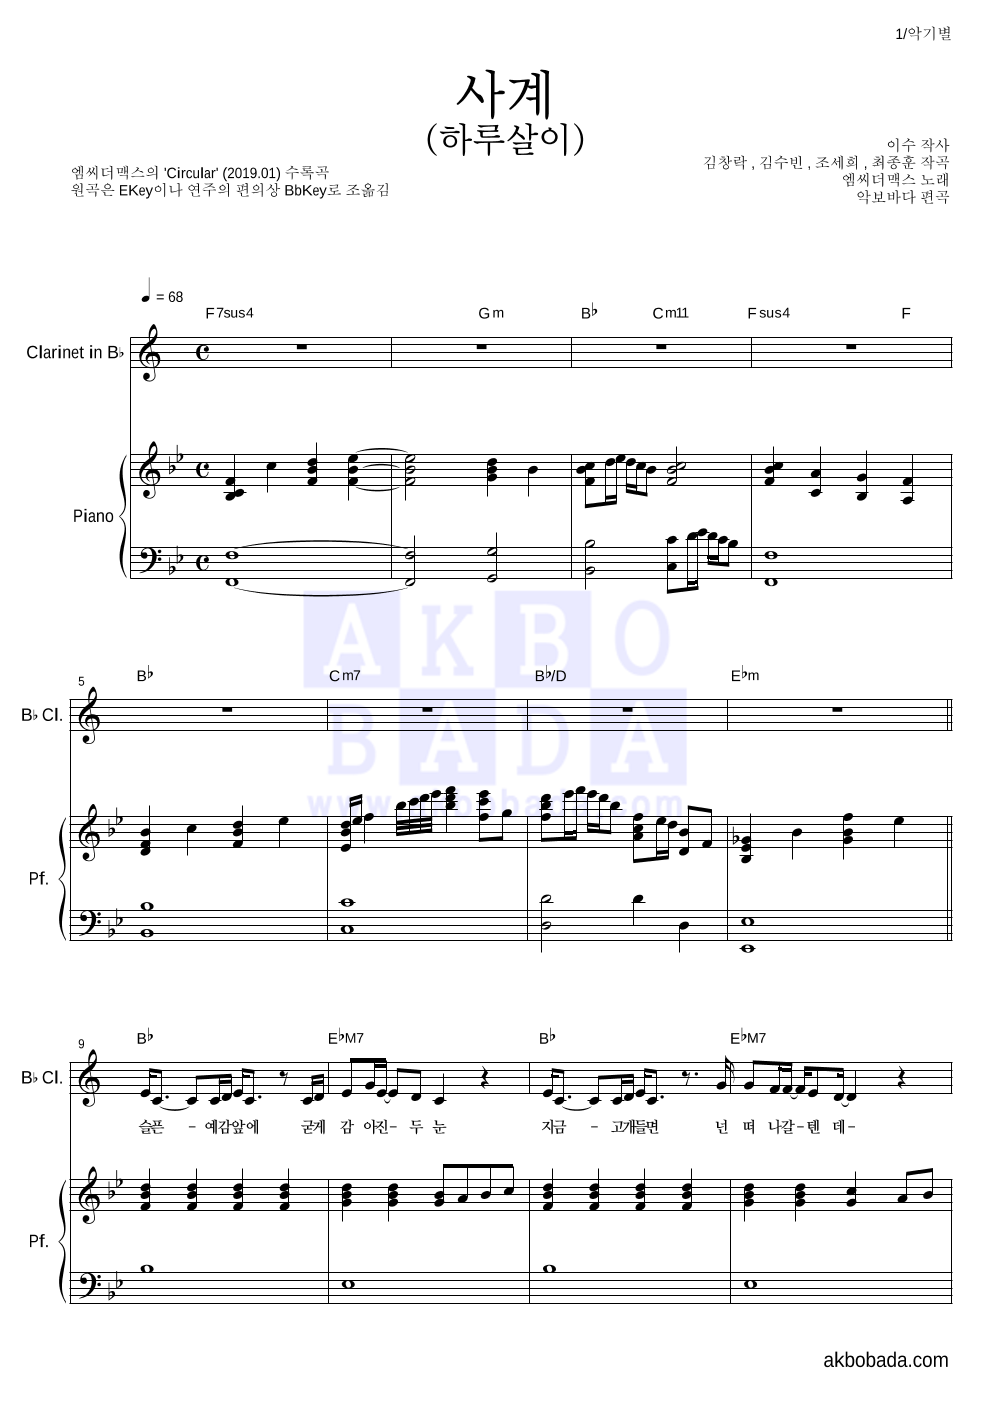 엠씨더맥스 - 사계(하루살이) 클라리넷&피아노 악보 